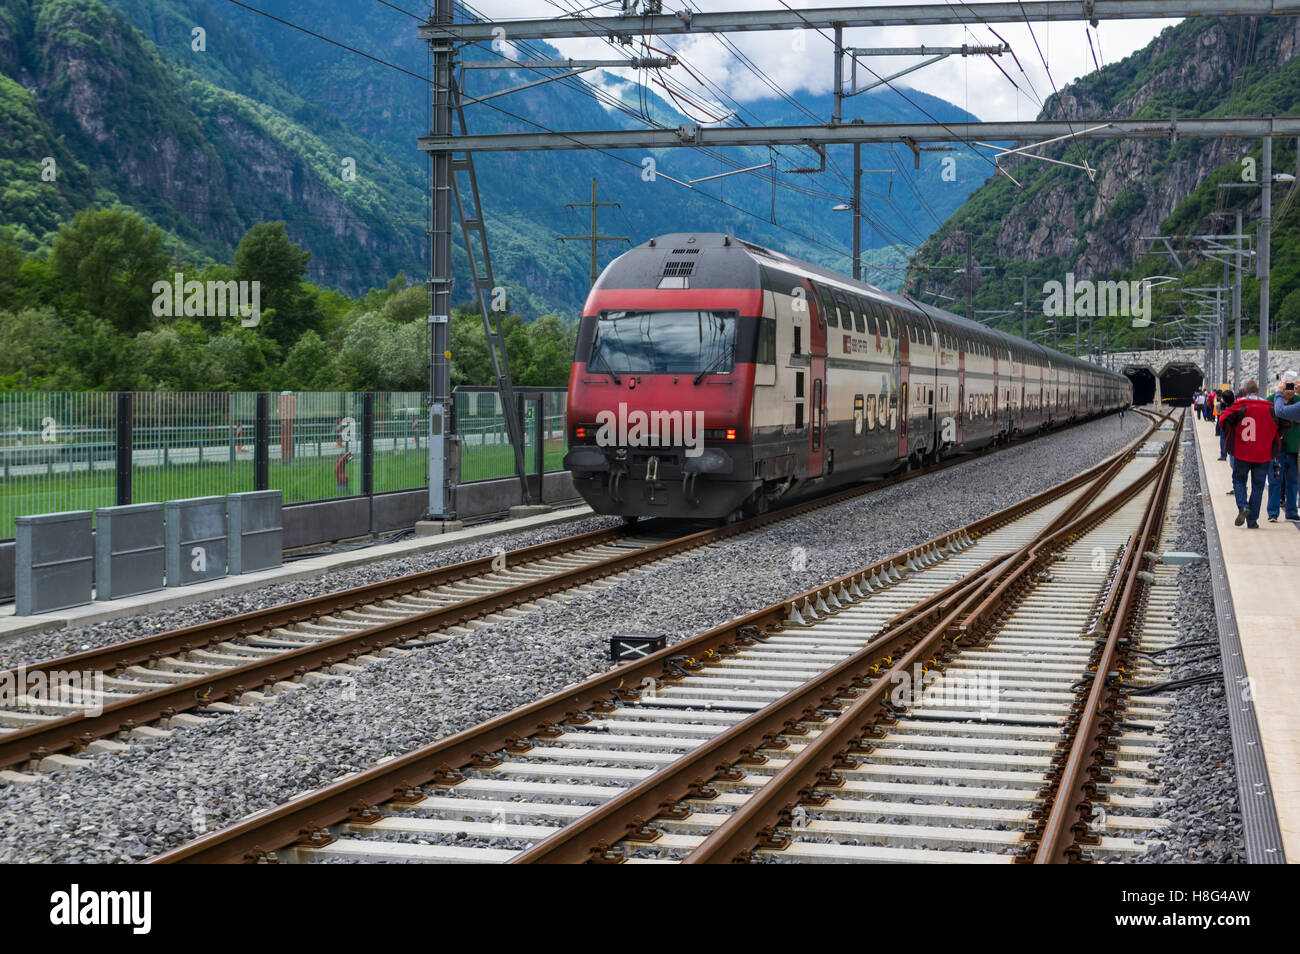 Northbound SBB IC 2000 tren de pasajeros de dos pisos entrando en el portal del sur de los 57km de largo túnel de base del Gotardo. Pollegio, Tesino, Suiza. Foto de stock